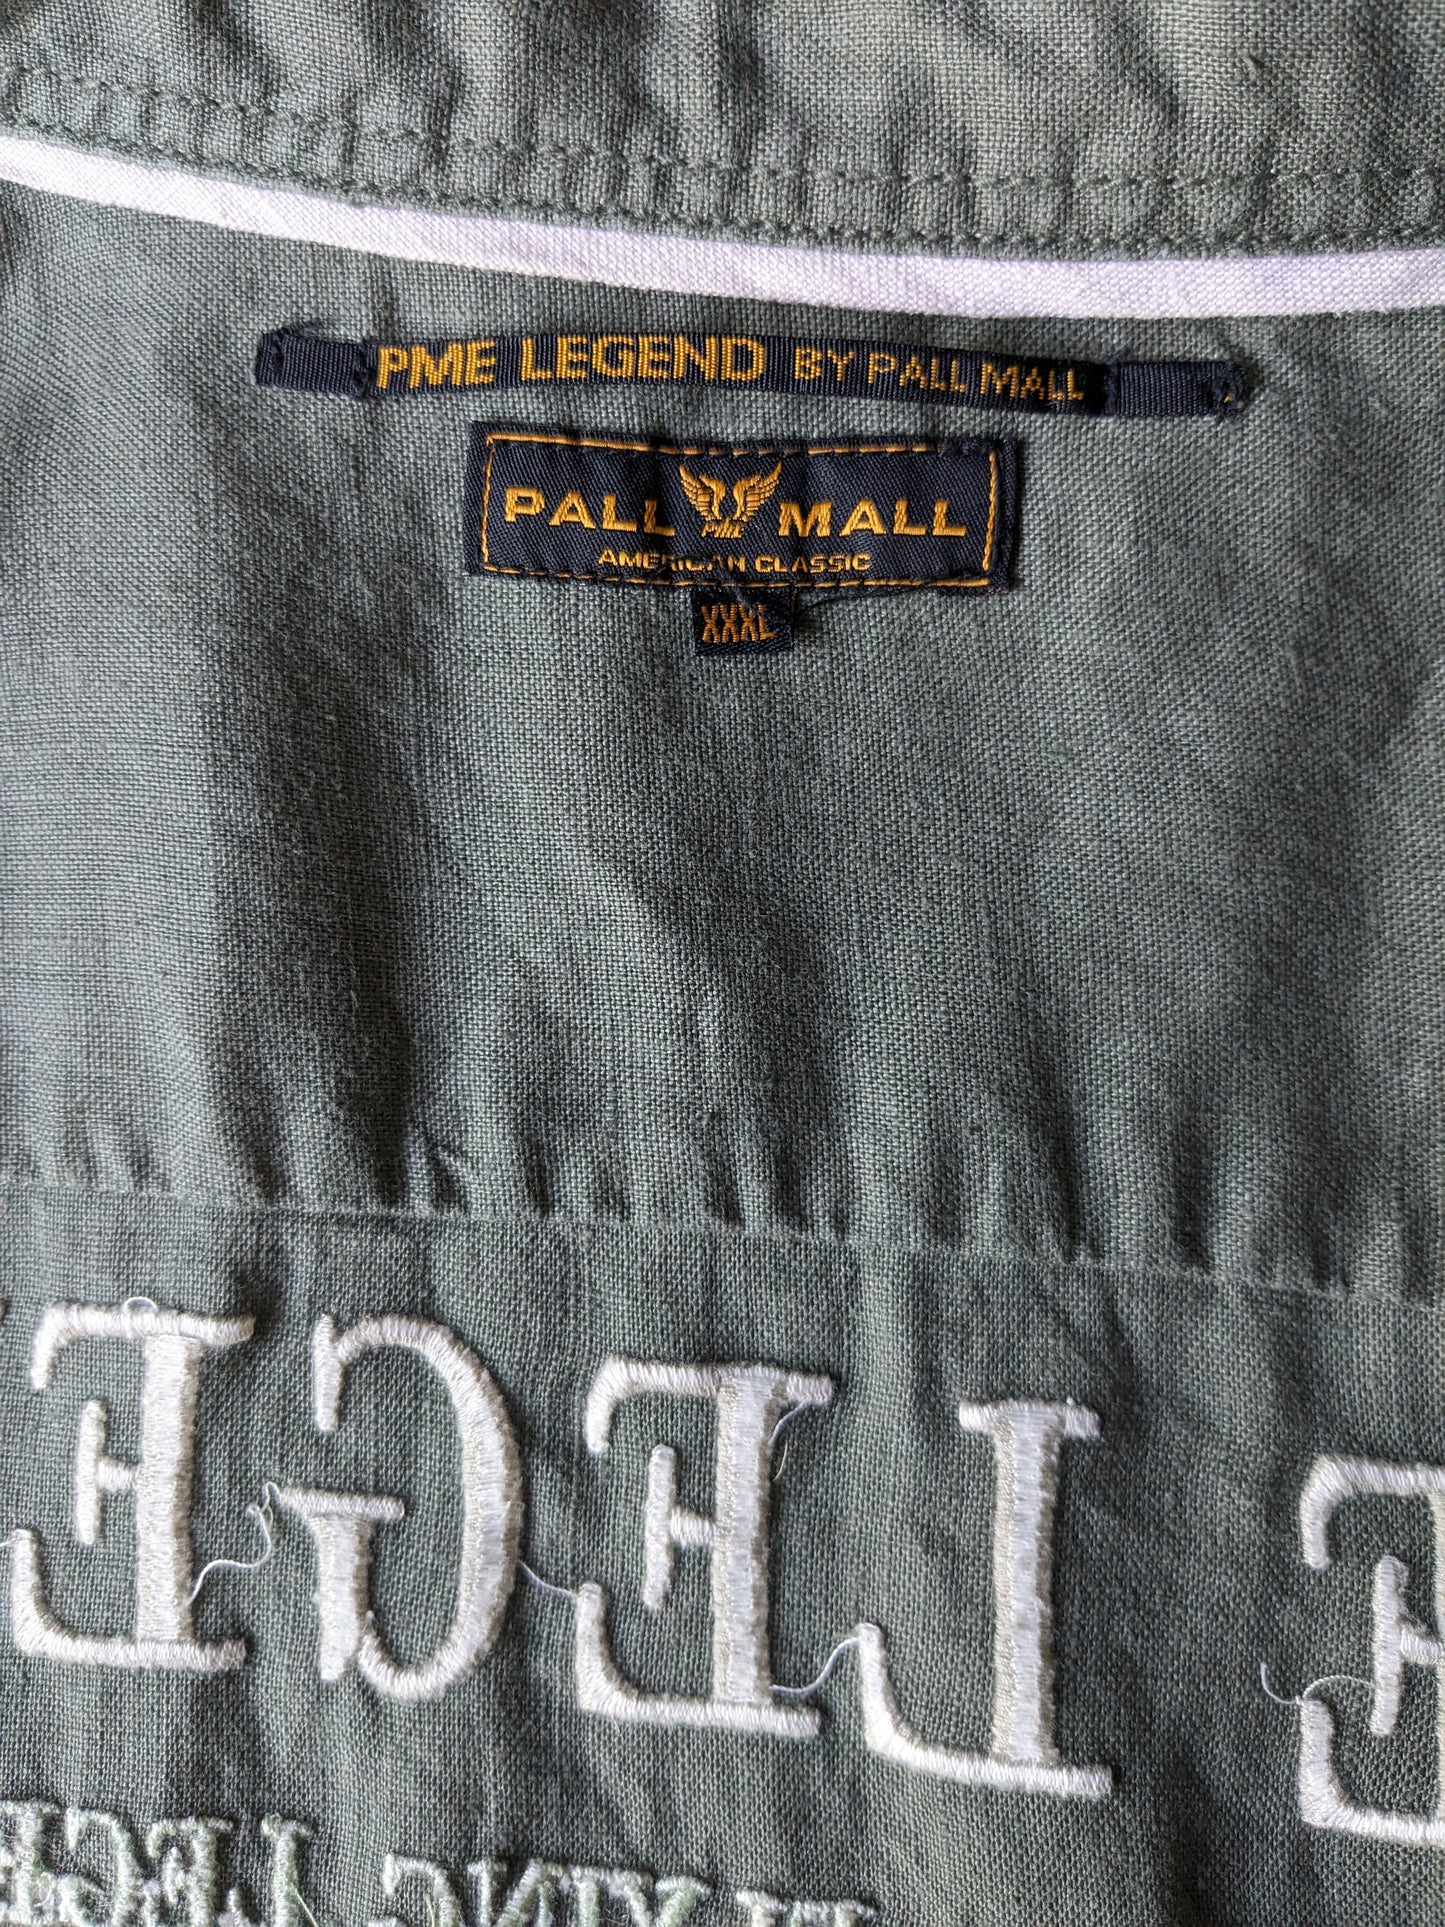 Pall Mall / PME Legend Linnen overhemd. Donker Groen gekleurd. Maat 3XL / XXXL.